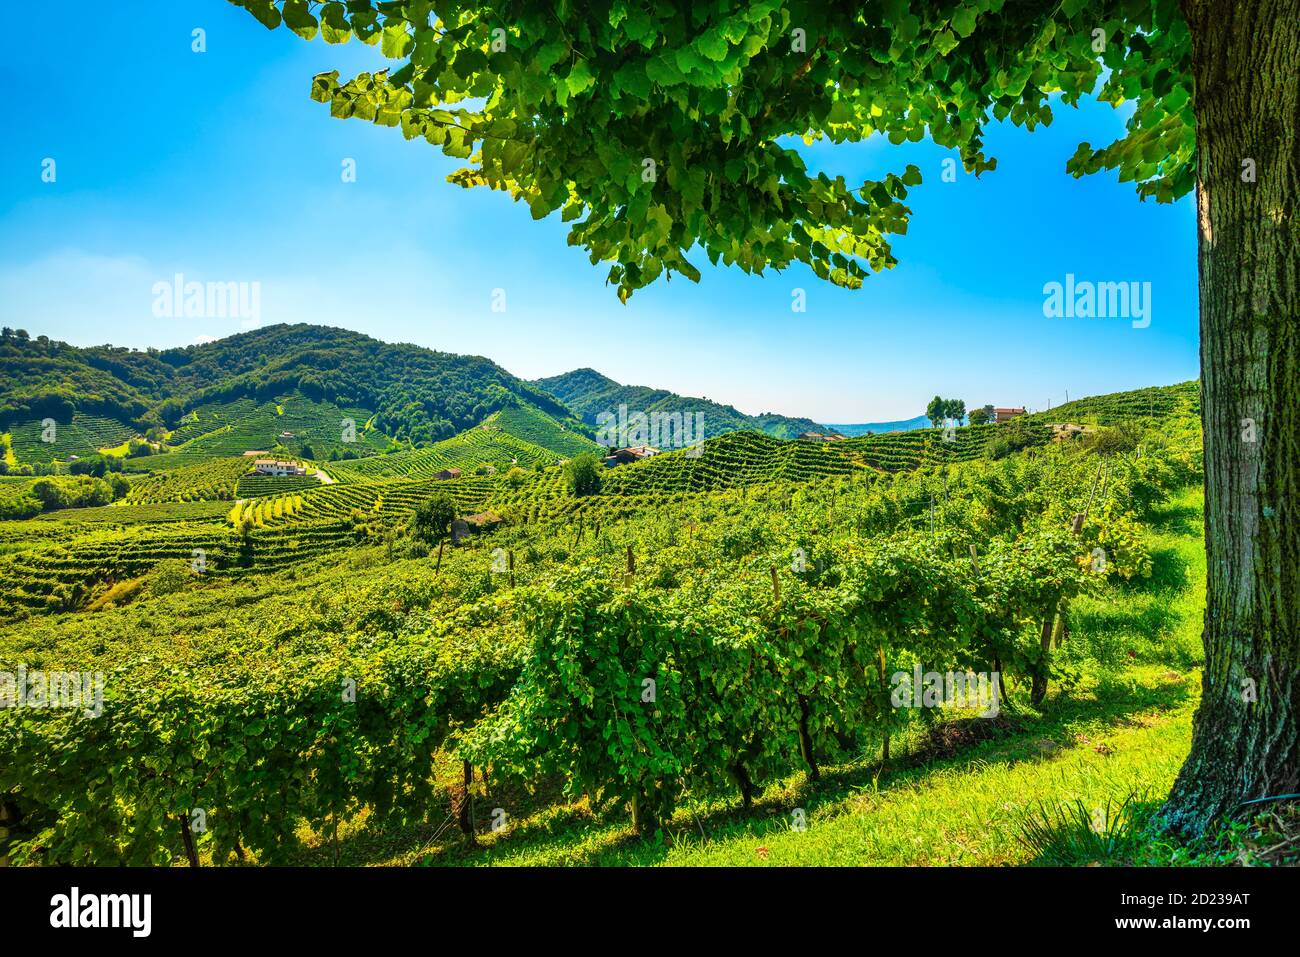 Vignobles Prosecco Hills et arbre comme cadre. Site de l'UNESCO. Guia, Valdobbiadene, Trévise, Vénétie, Italie, Europe. Banque D'Images